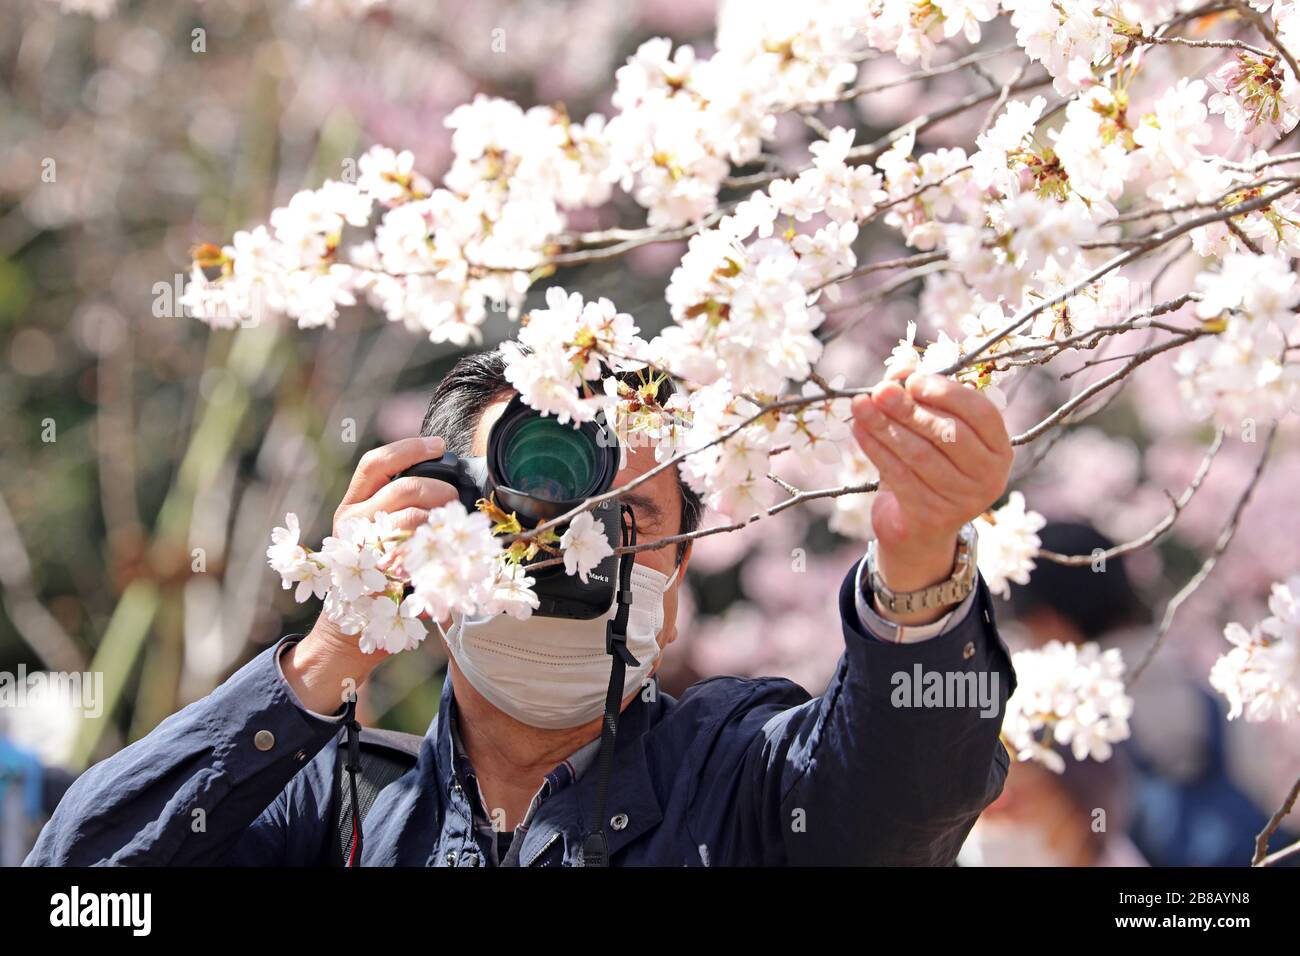 Tokyo, Japon. 21 mars 2020. La peur du Coronavirus n'a pas arrêté les Japonais de prendre part à leur observation annuelle de cerisiers en fleurs. Armés de masques faciaux, les foules se sont transformées comme d'habitude pour photographier les arbres en fleurs dans le parc national Shinjuku Gyoen de Tokyo, à Shinjuku, au Japon. Il y a eu des restrictions sur les pique-niques organisés habituels, et la foule a peut-être été plus mince que l'année dernière, mais cela n'a pas permis aux gens de profiter des fleurs et de mettre en place quelques pique-niques improvisés, mais avec un peu plus d'espace entre les groupes que d'habitude. Crédit: Paul Brown/Alay Live News Banque D'Images